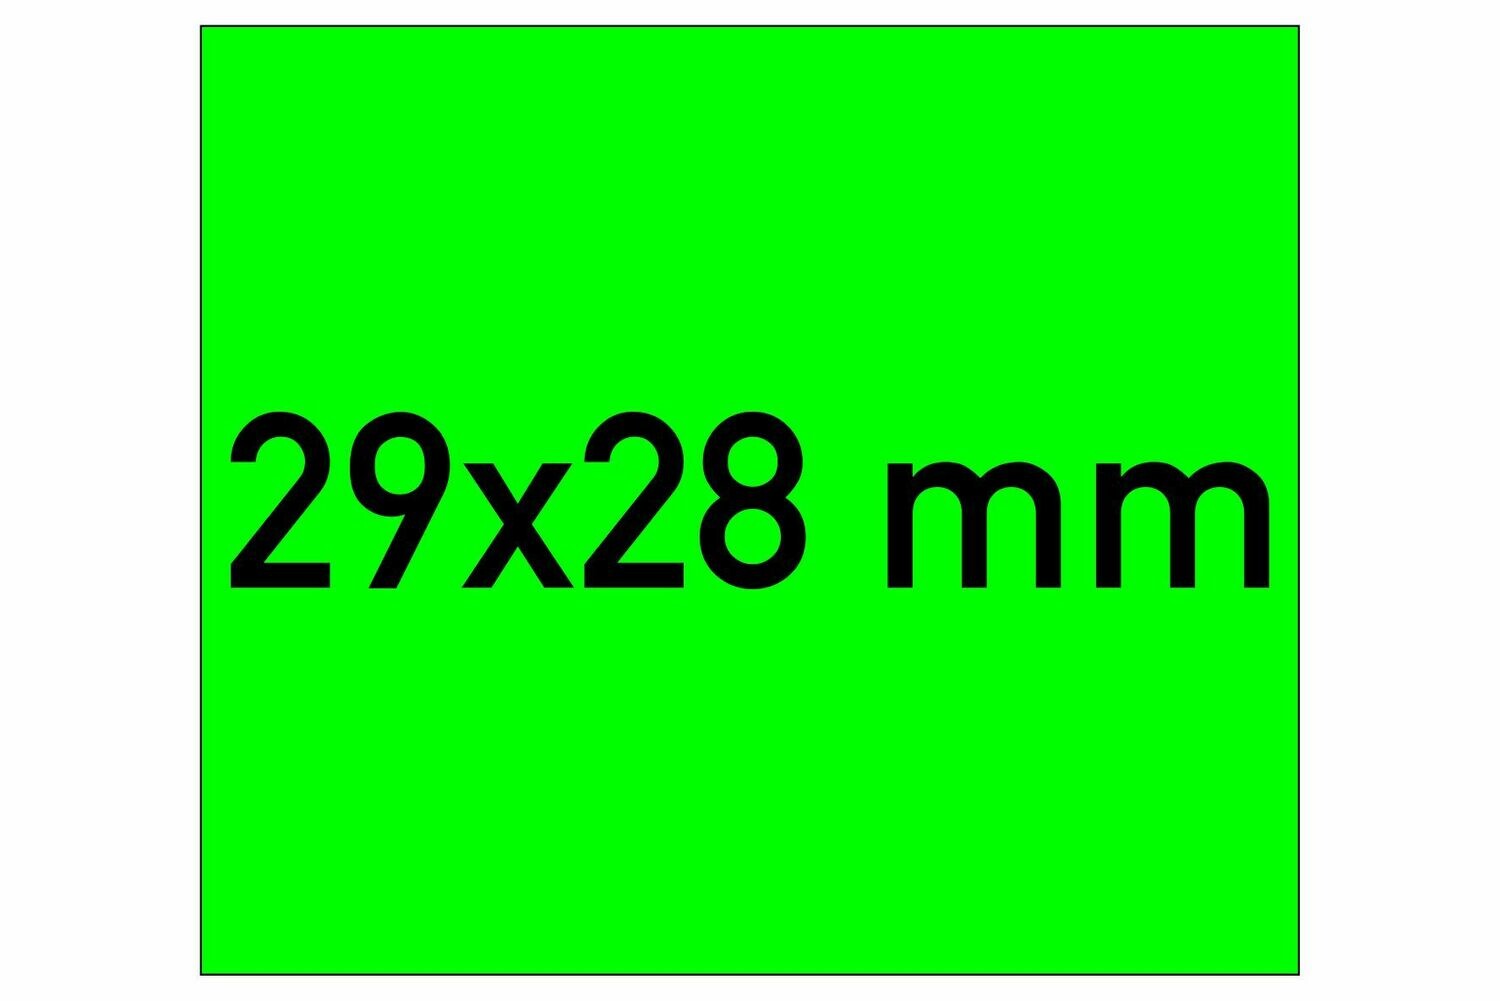 Etiketten 29x28 mm grün